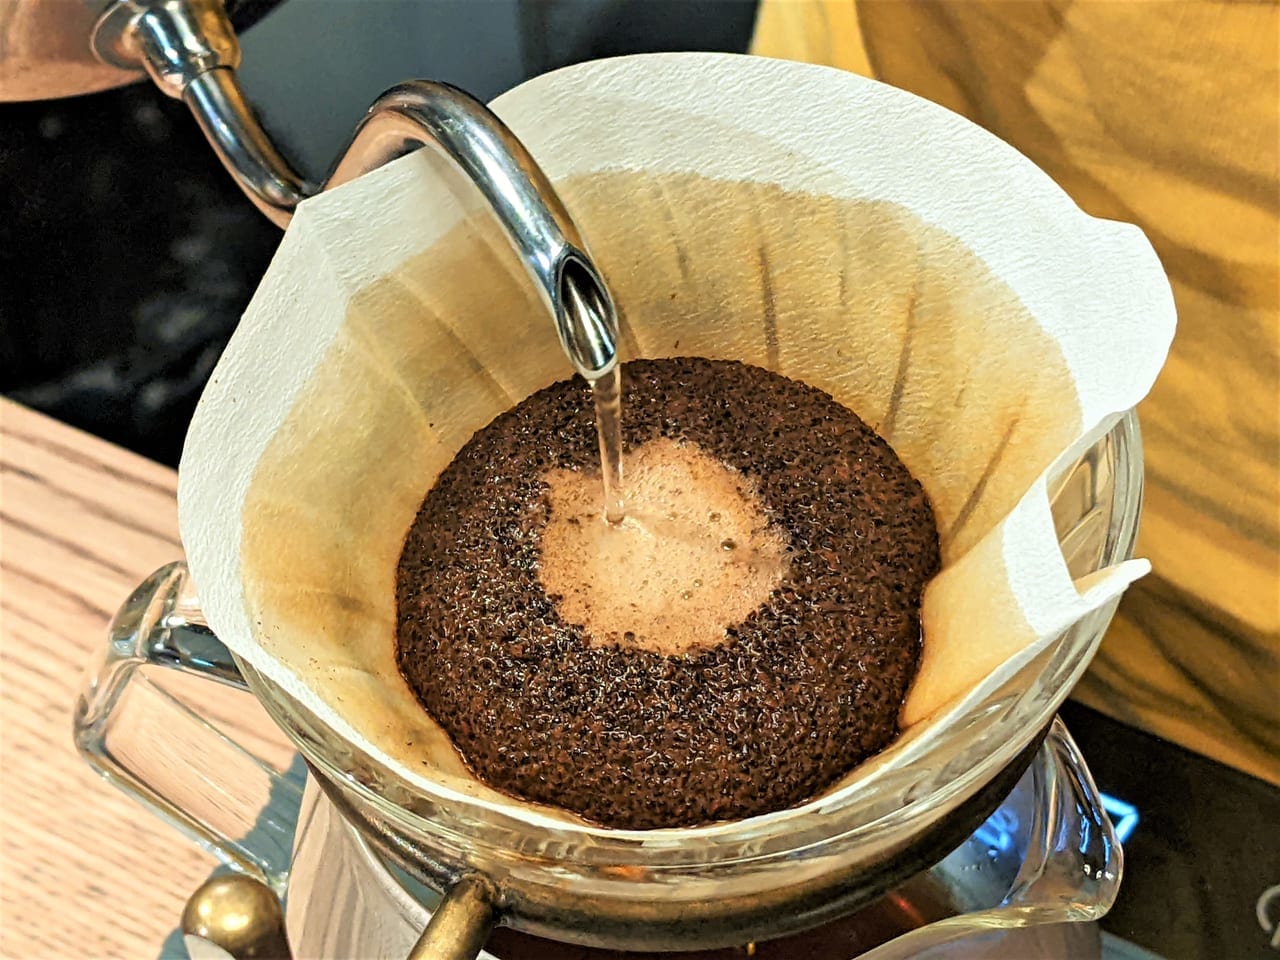 「UCHIDA COFFEE」のドリップコーヒー